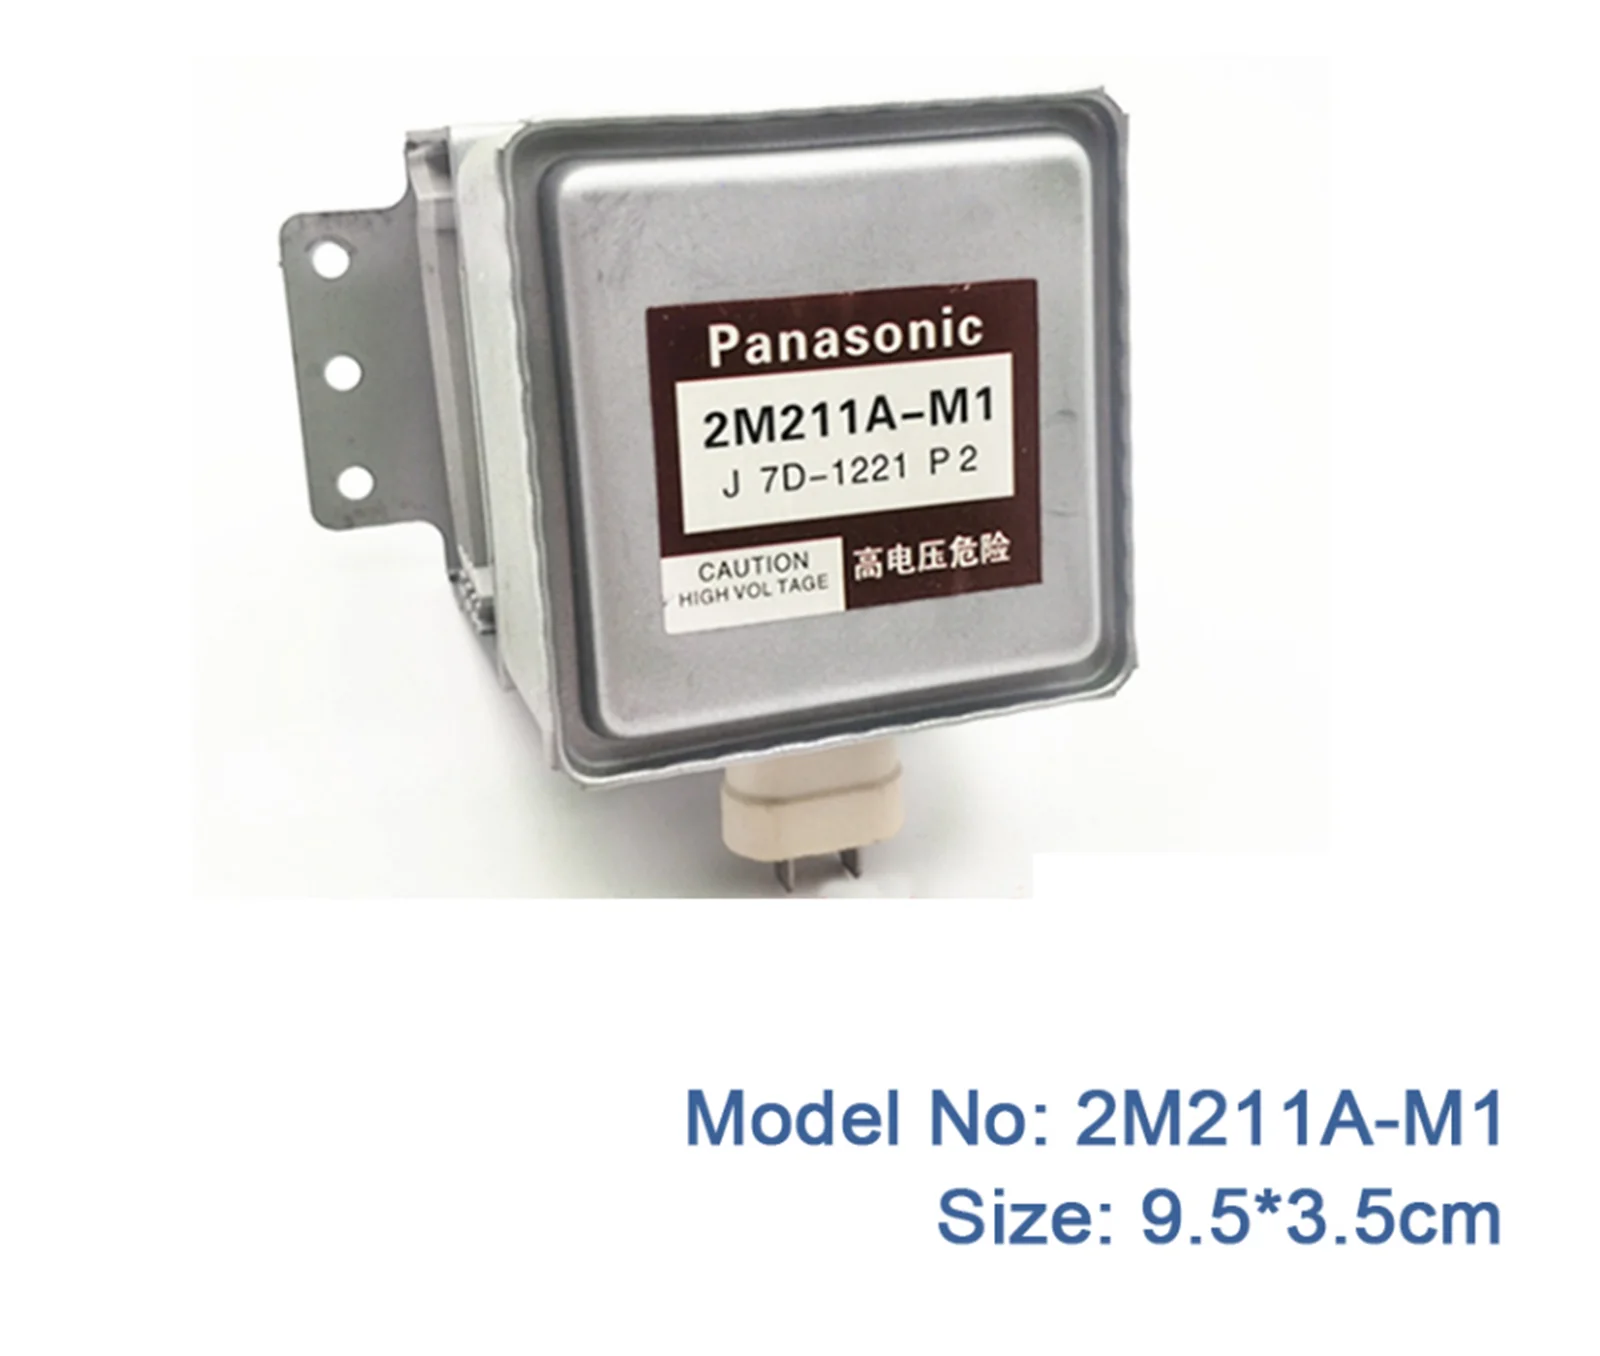 

1pcs/lot 9.5*3.5cm 2M211A-M1 (same 2M211A,2M211) 4 cooling ribs for Panasonic original CSCSD microwave magnetron microondas